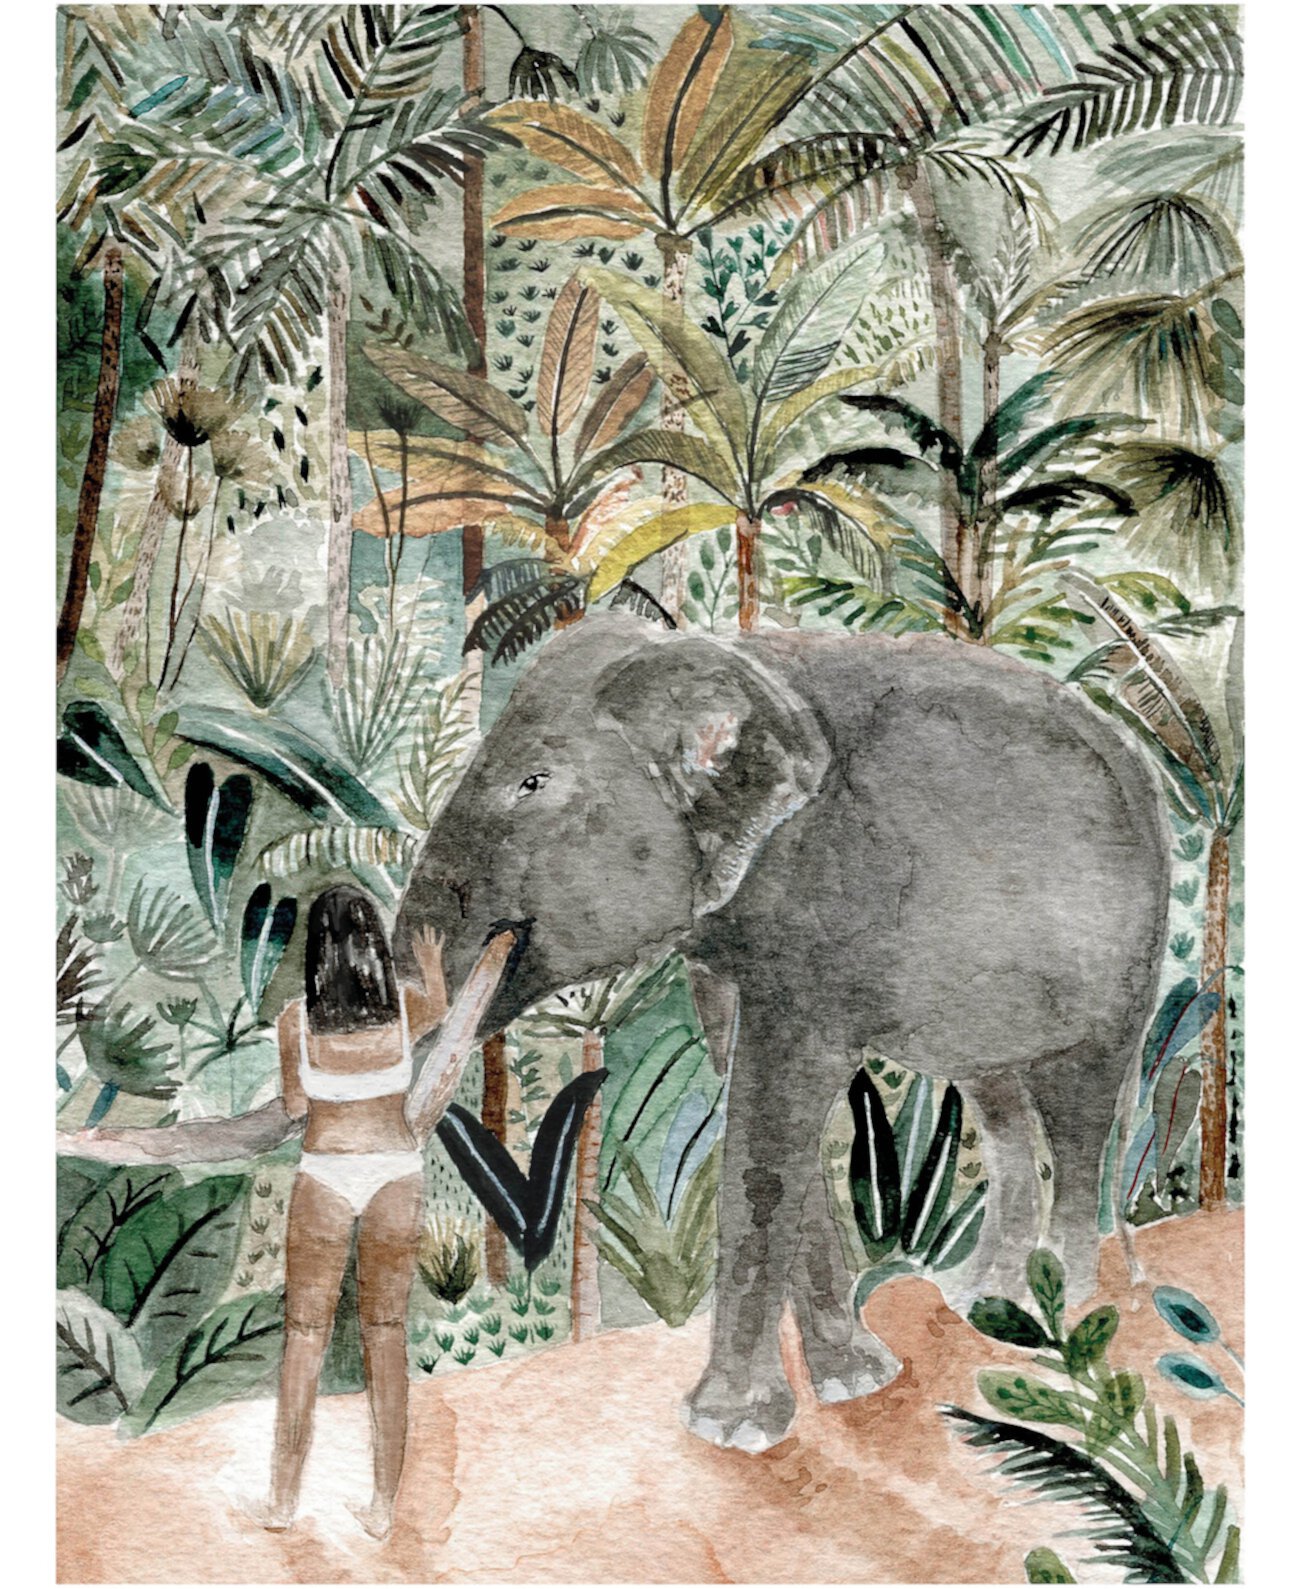 Jungle Afternoons, Isabelle Vandeplasche головоломка с декоративными произведениями плюс набор клея для головоломки от Jiggy Puzzles Set, 800 деталей Jiggy